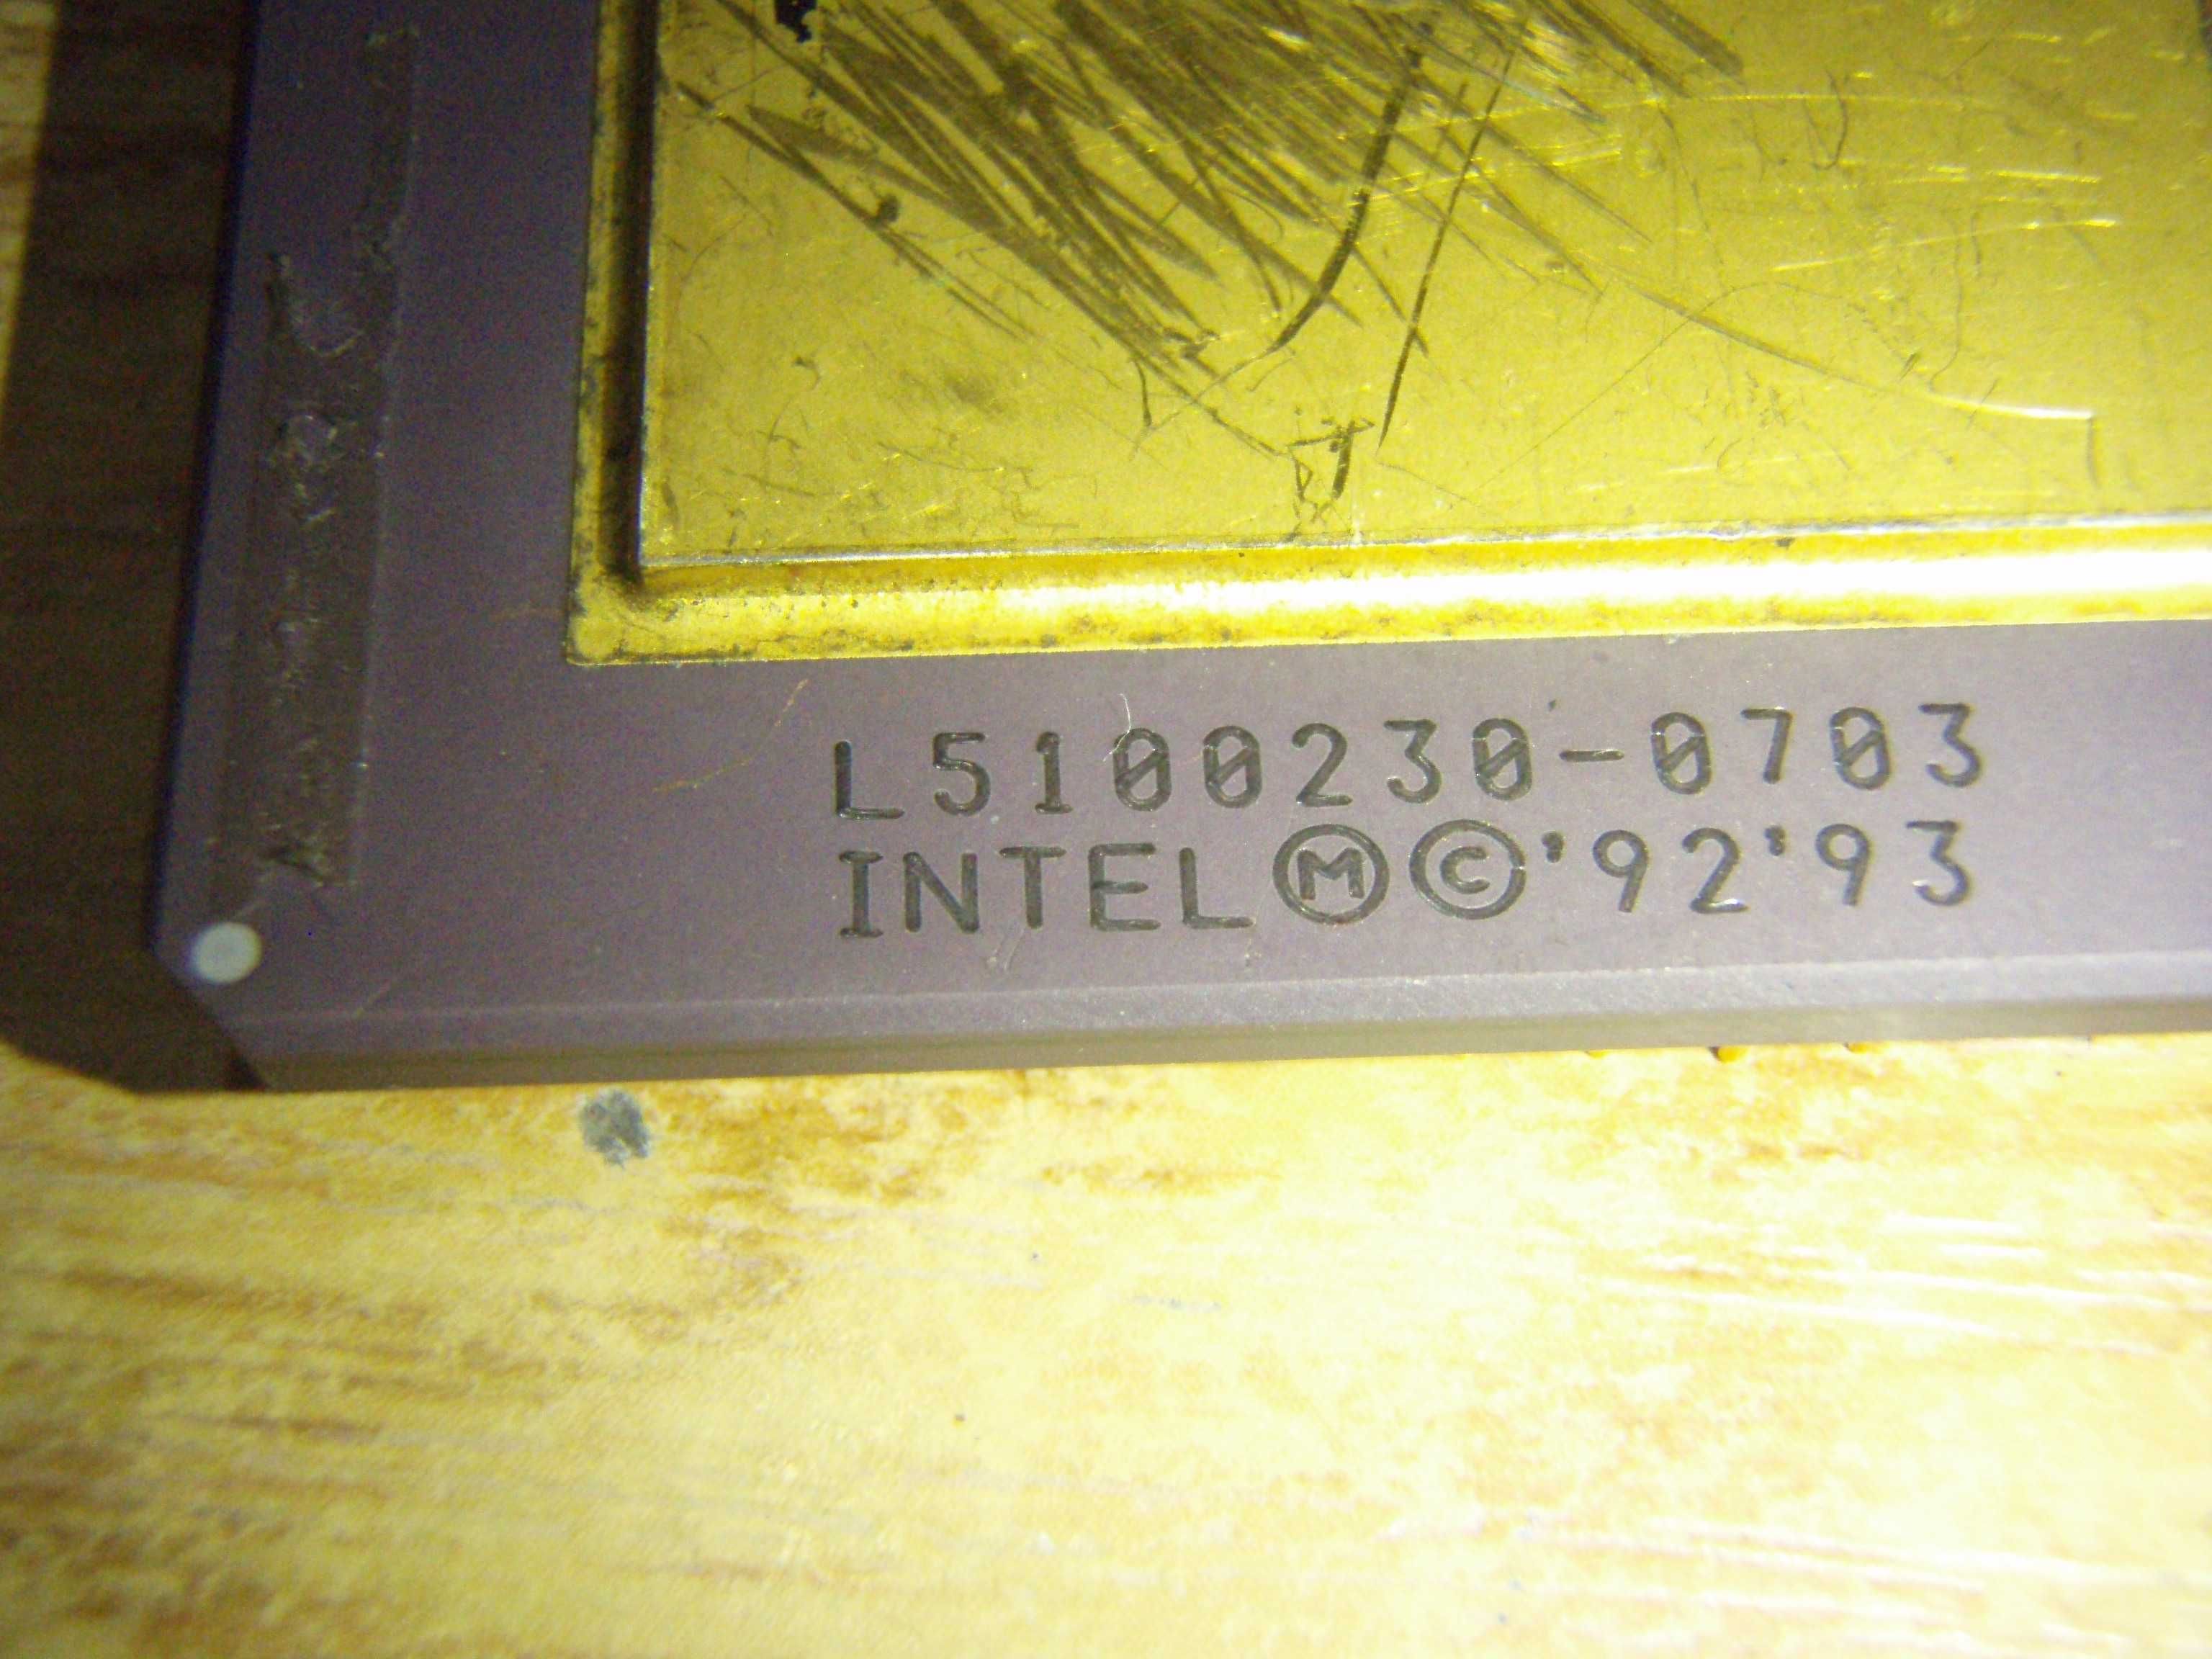 Procesor intel Pentium 90 A80502-90 SX957, pentru colectie sau aur
|